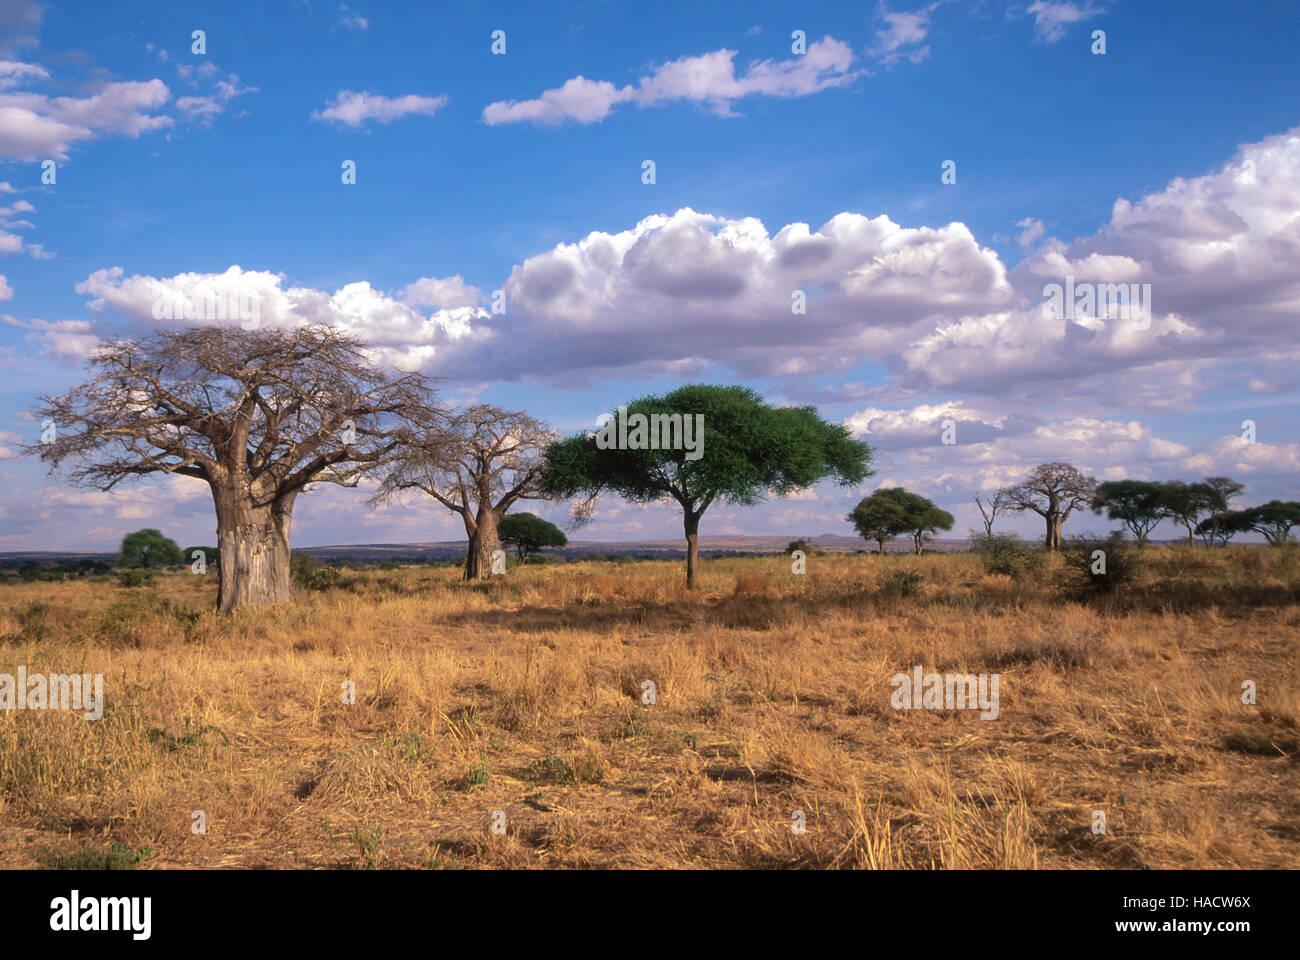 Árboles de baobab (Adansonia digitata) y tall Acacia en sabanas abiertas, Parque Nacional Tarangire, Tanzania Foto de stock